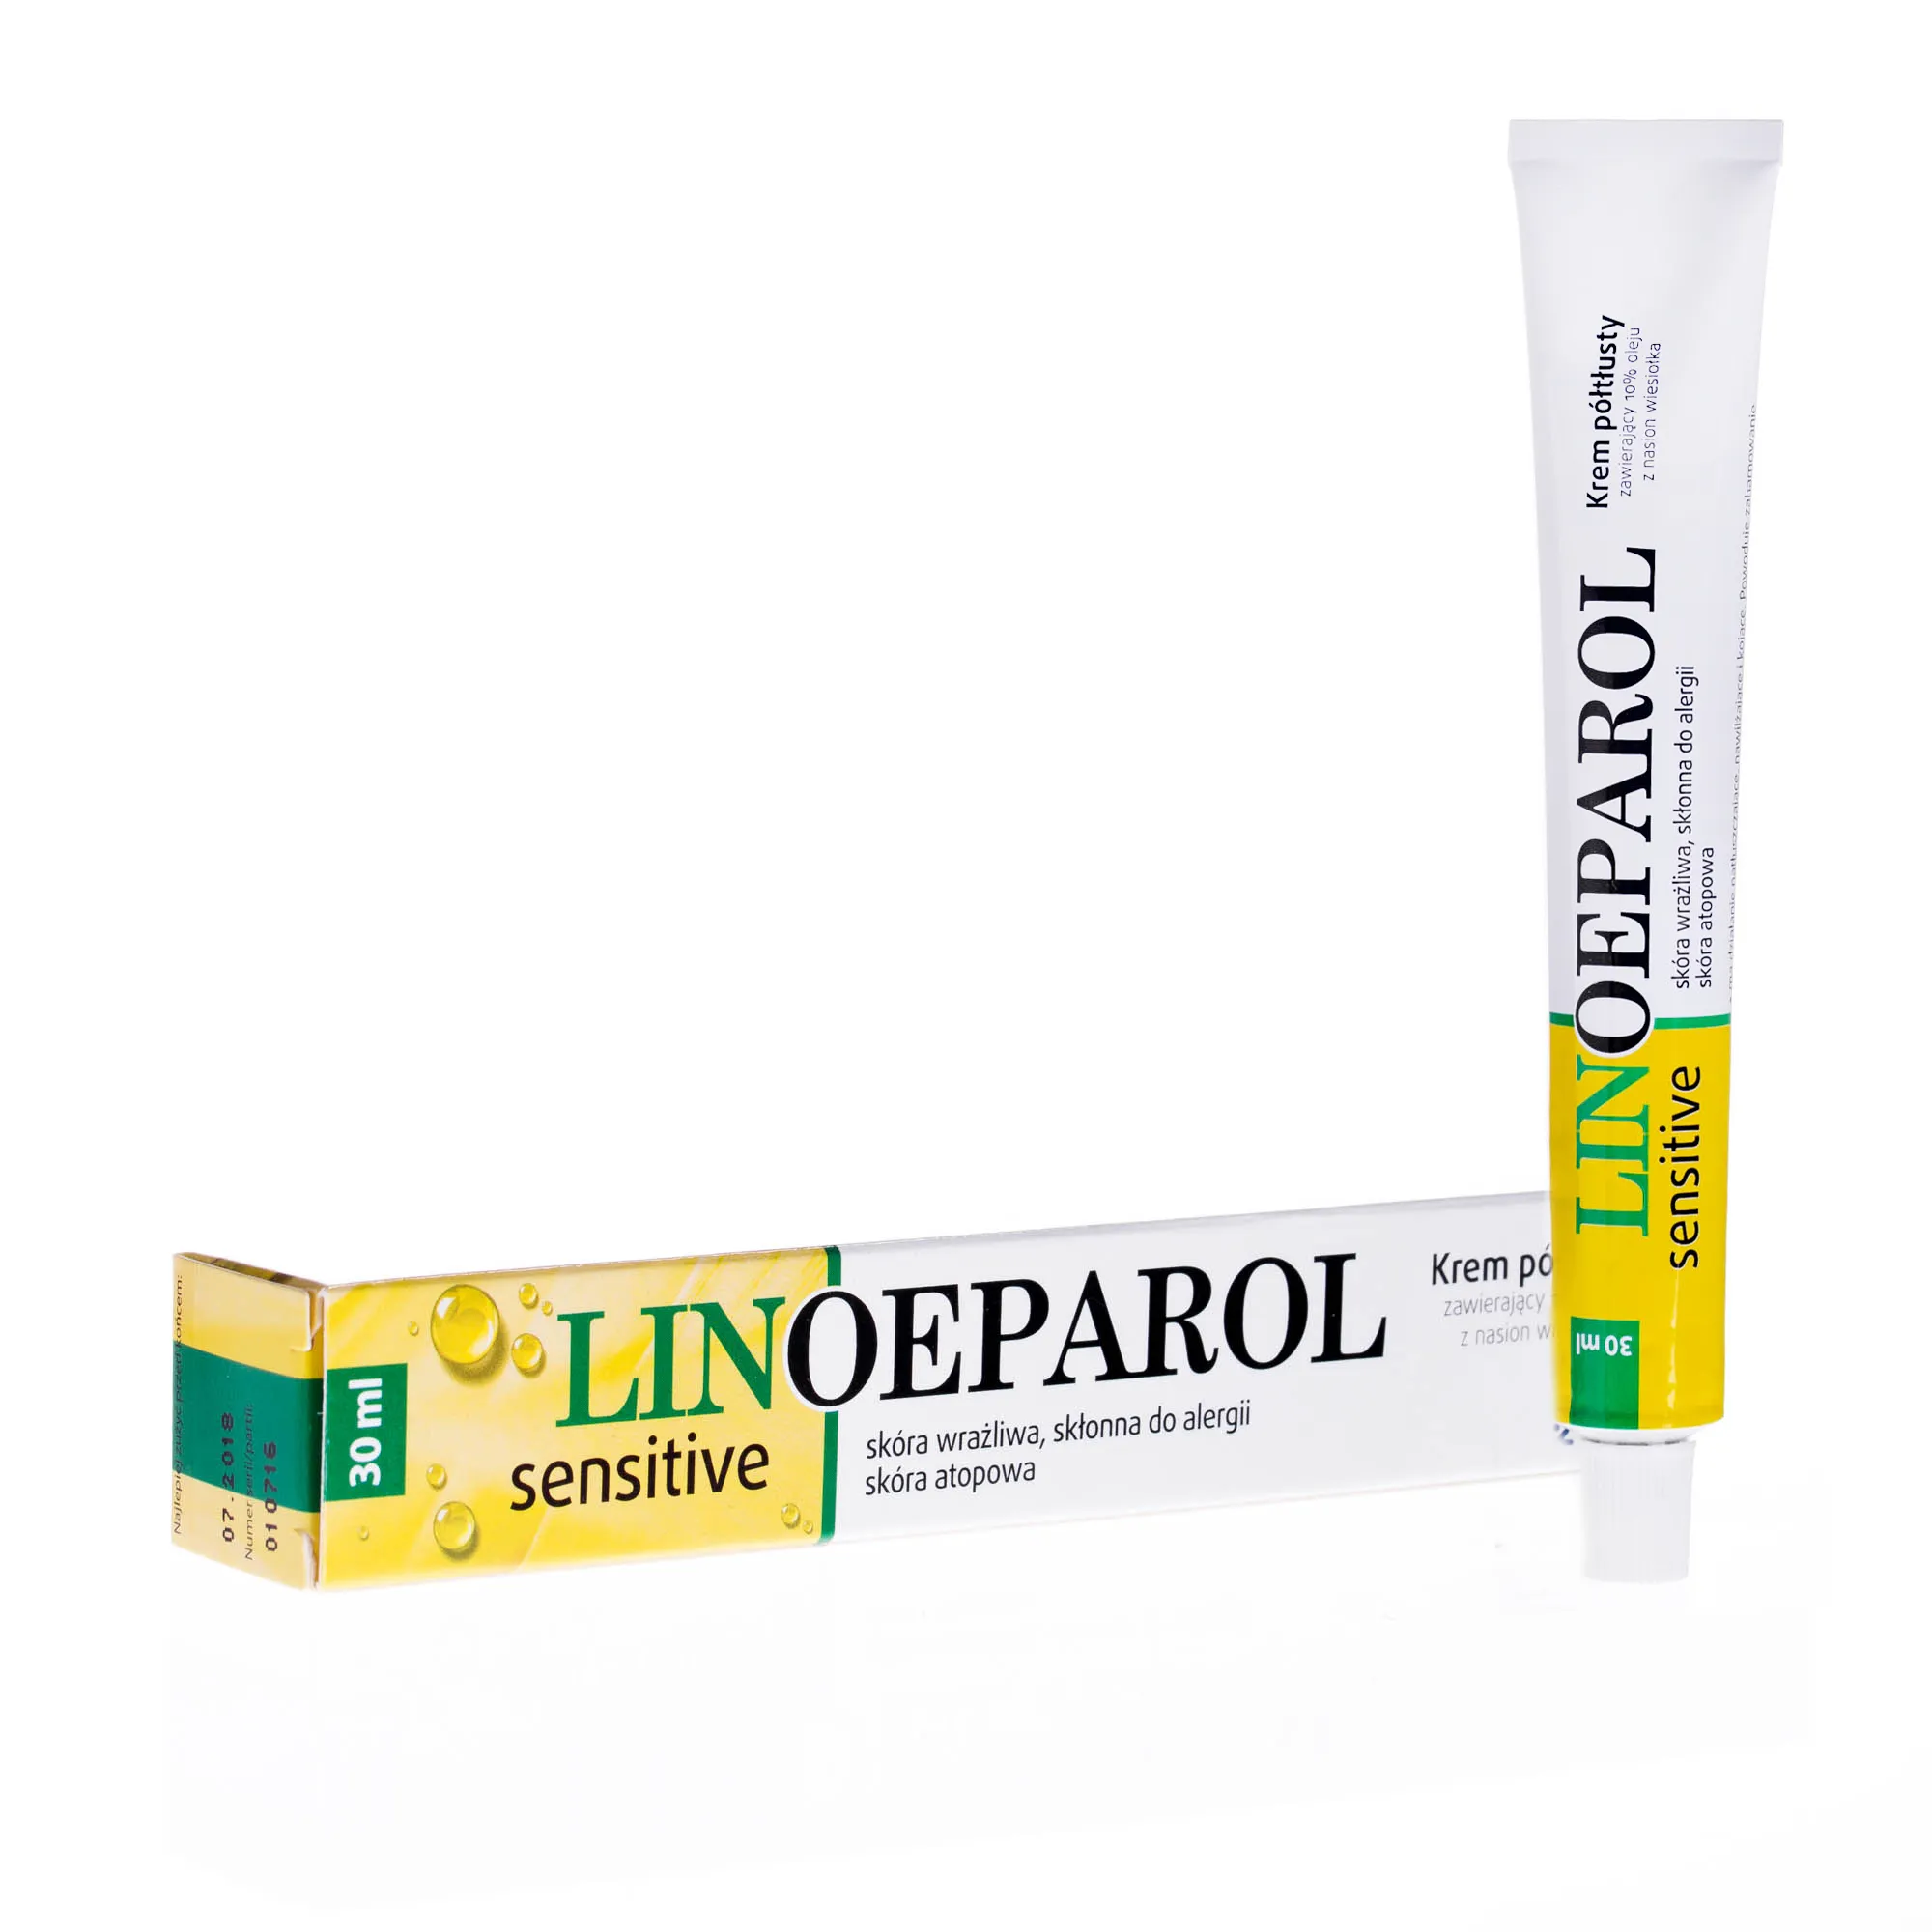 Linoeparol - krem półtłusty do skóry wrażliwej, skłonnej do alergii, 30 ml